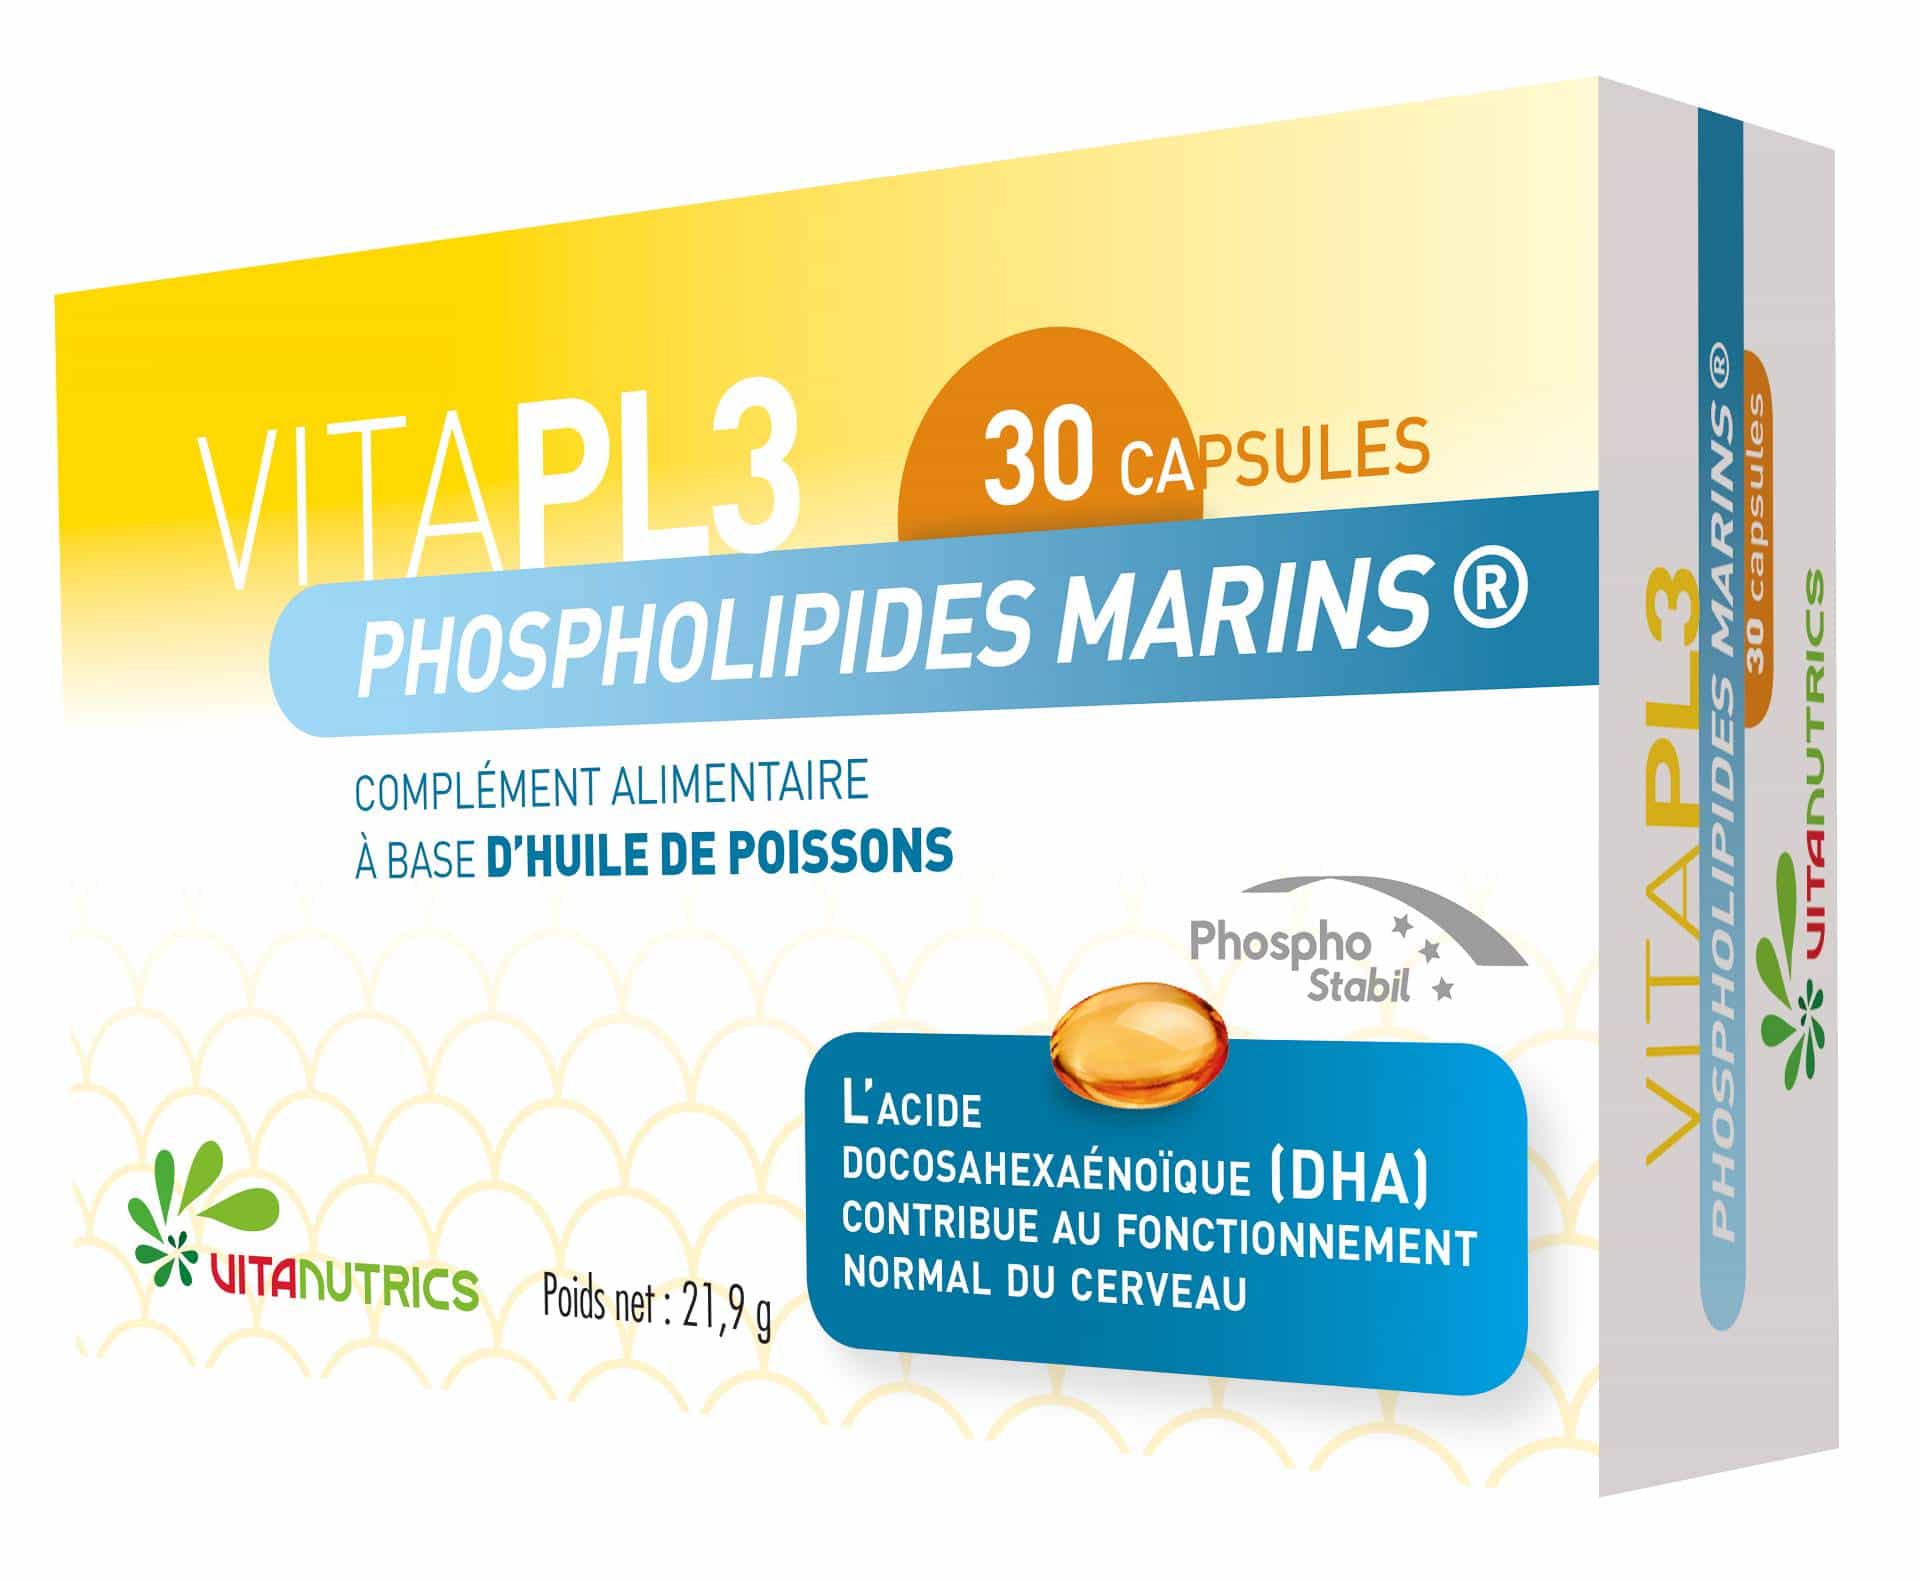 Vitanutrics VitaPL3